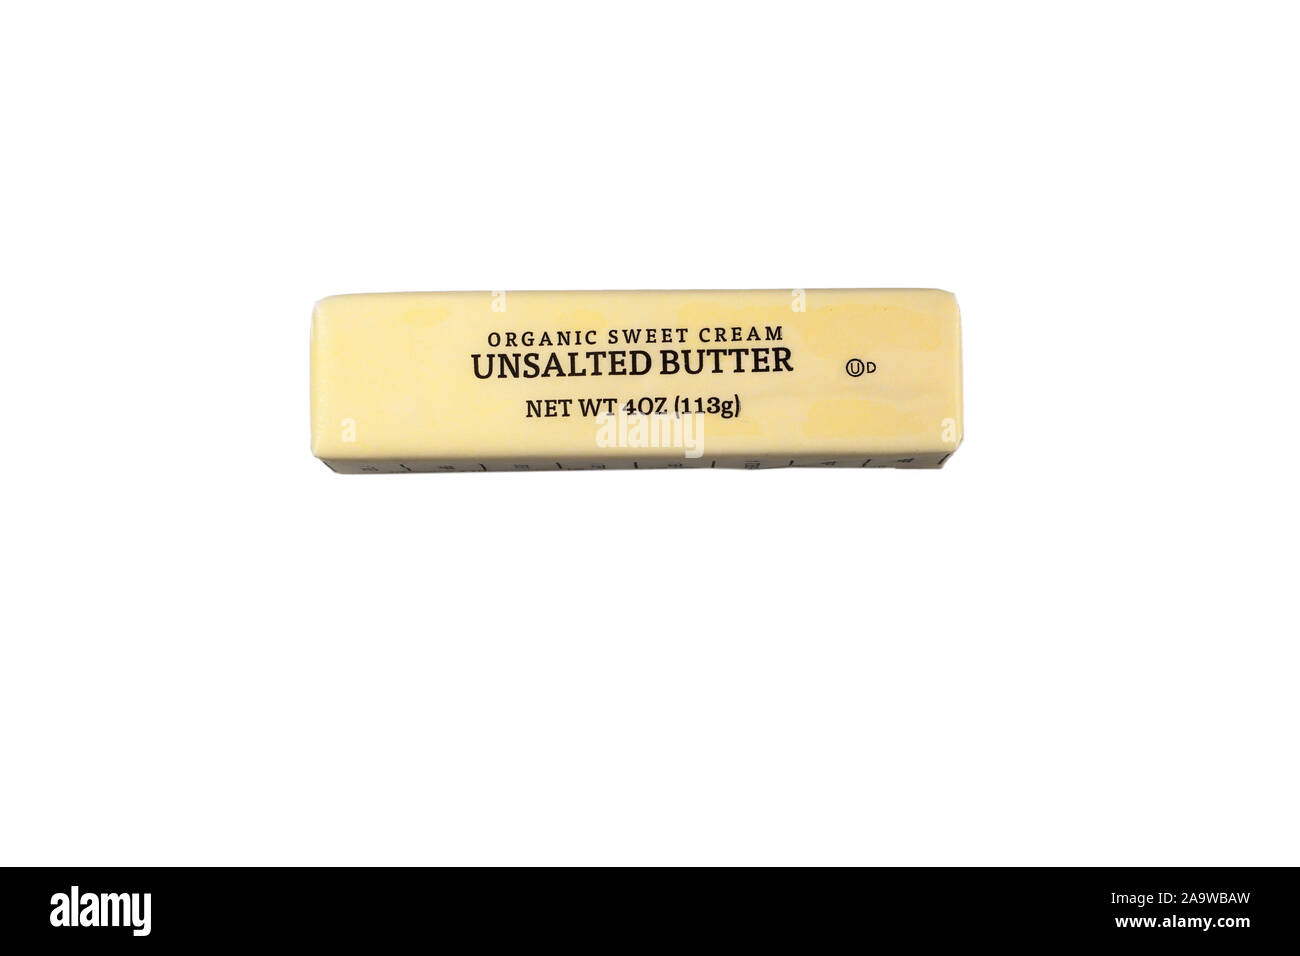 Ein Stock aus Bio, ungesalzene Butter isoliert auf einem weißen Hintergrund. Ausschnitt Bild für Illustration und redaktionelle Verwendung. Stockfoto